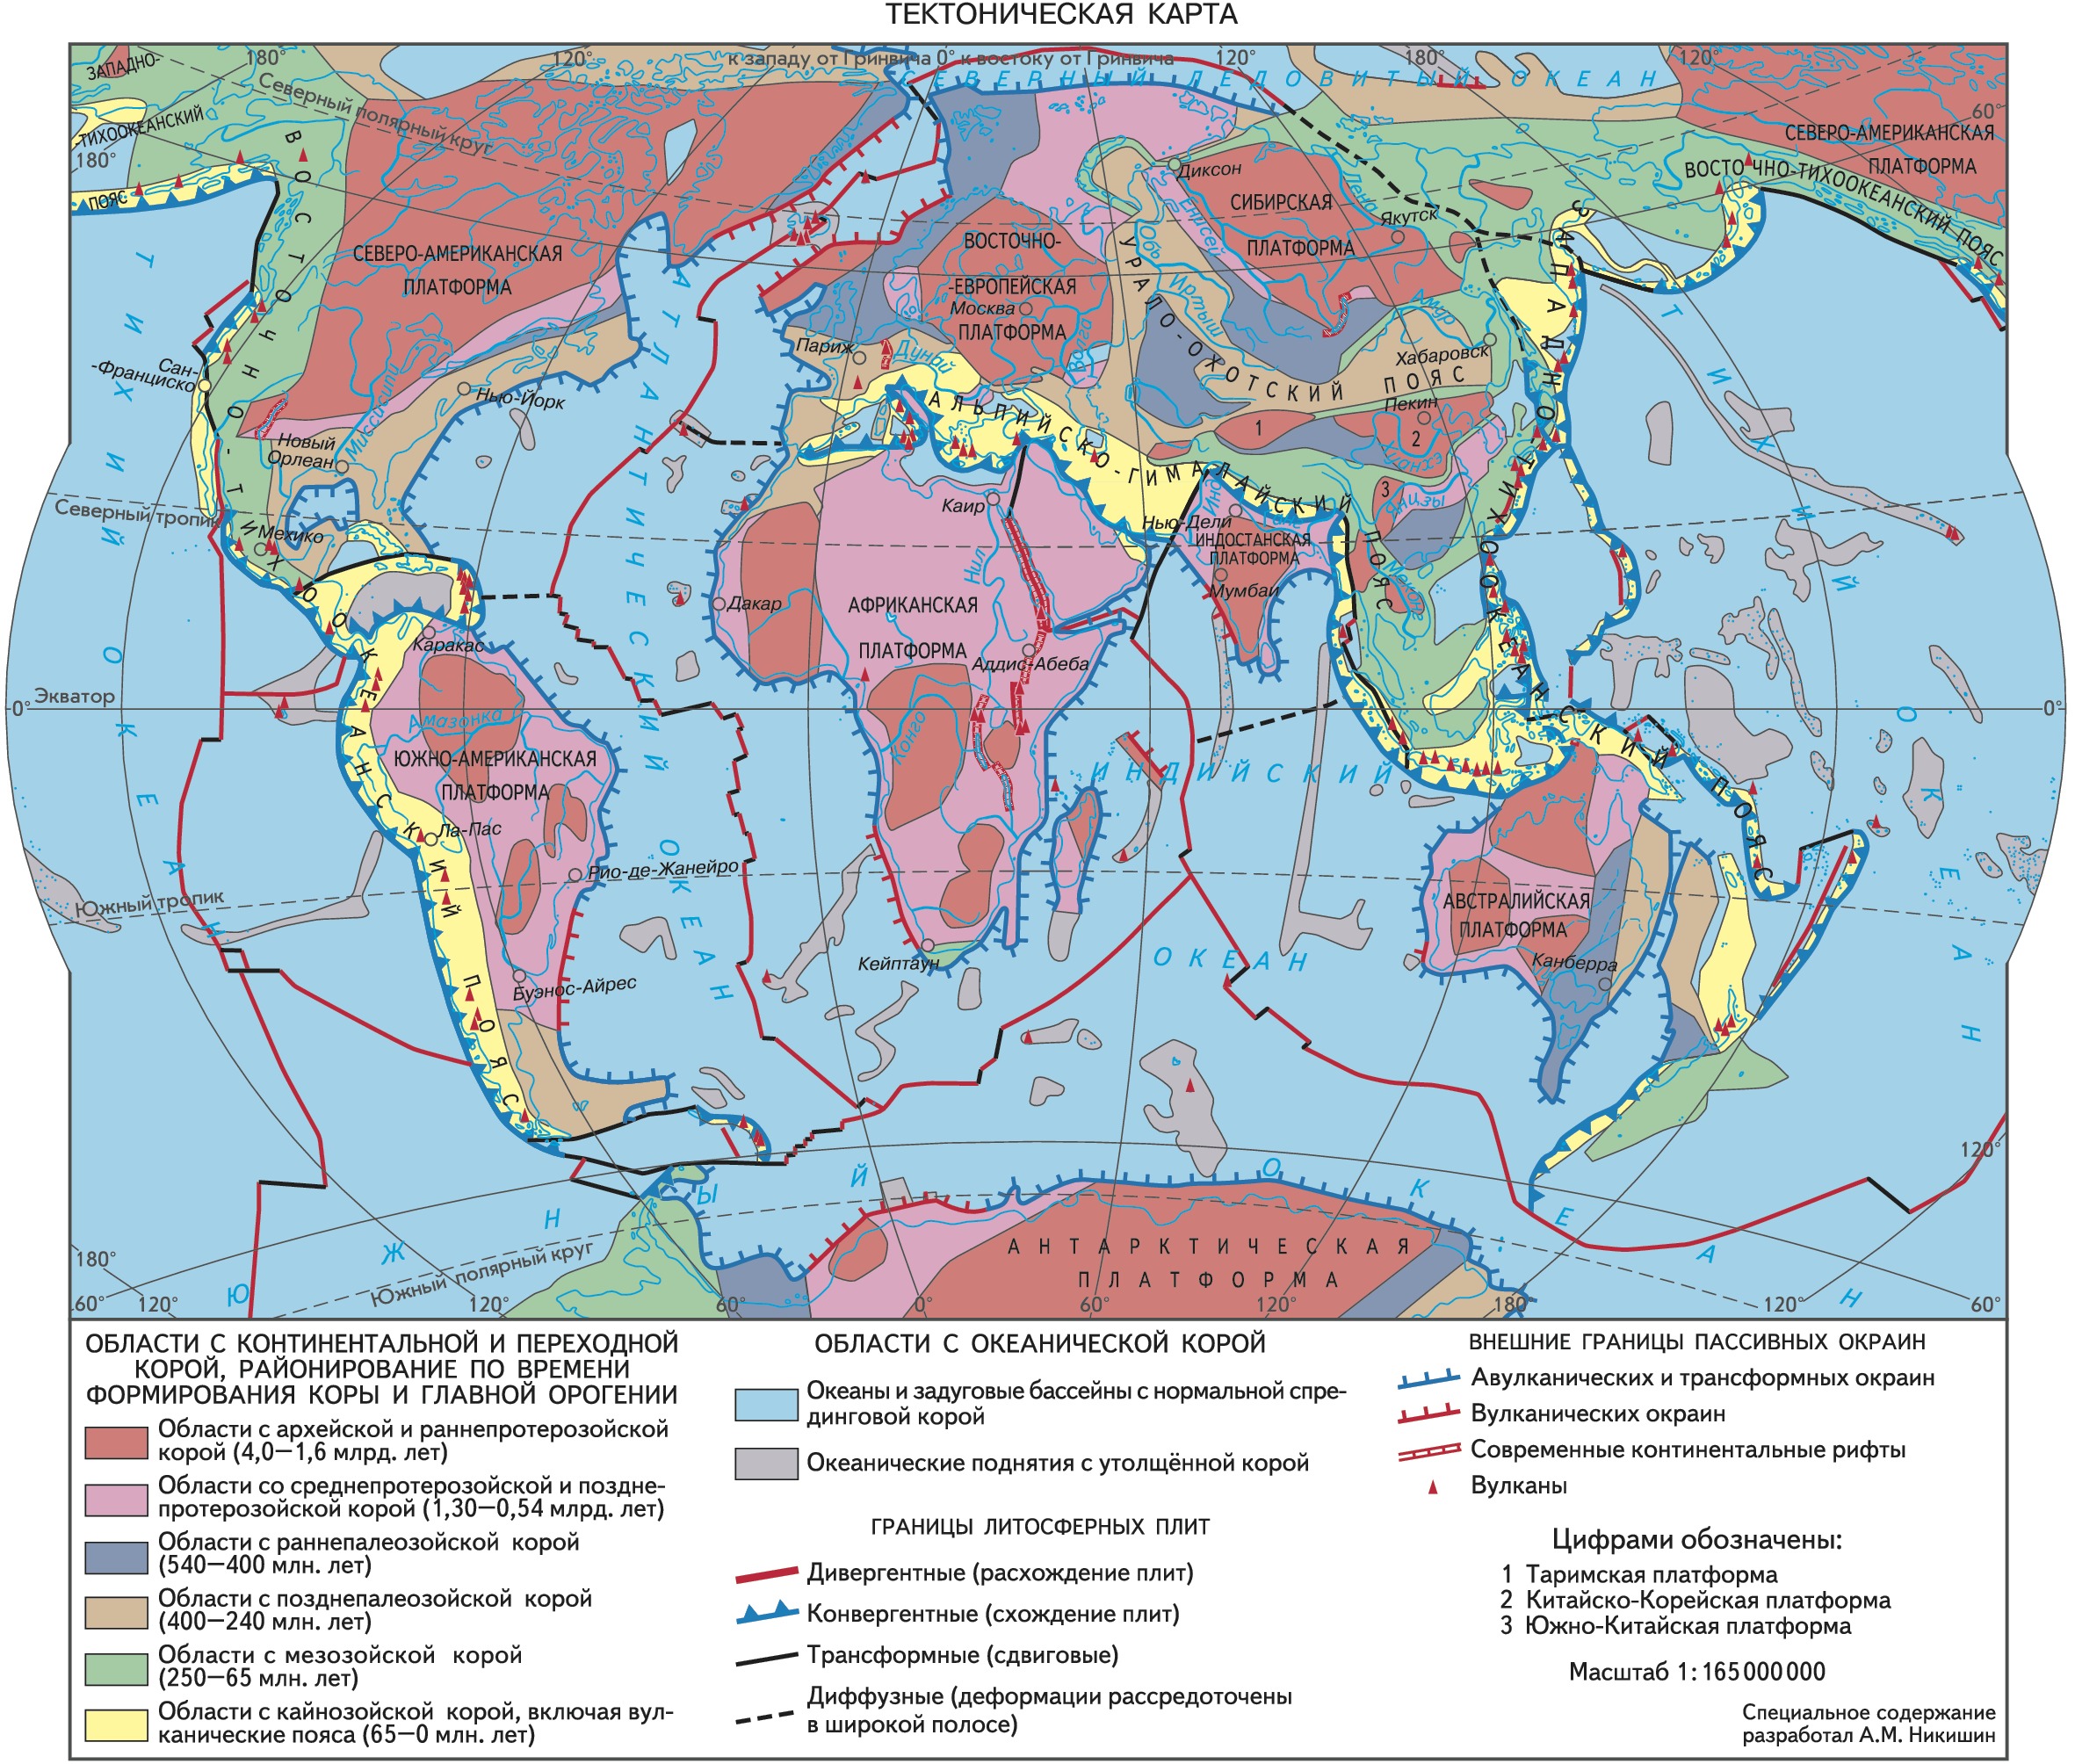 В пределах древней платформы лежат. Карта тектоническая тектоническая.